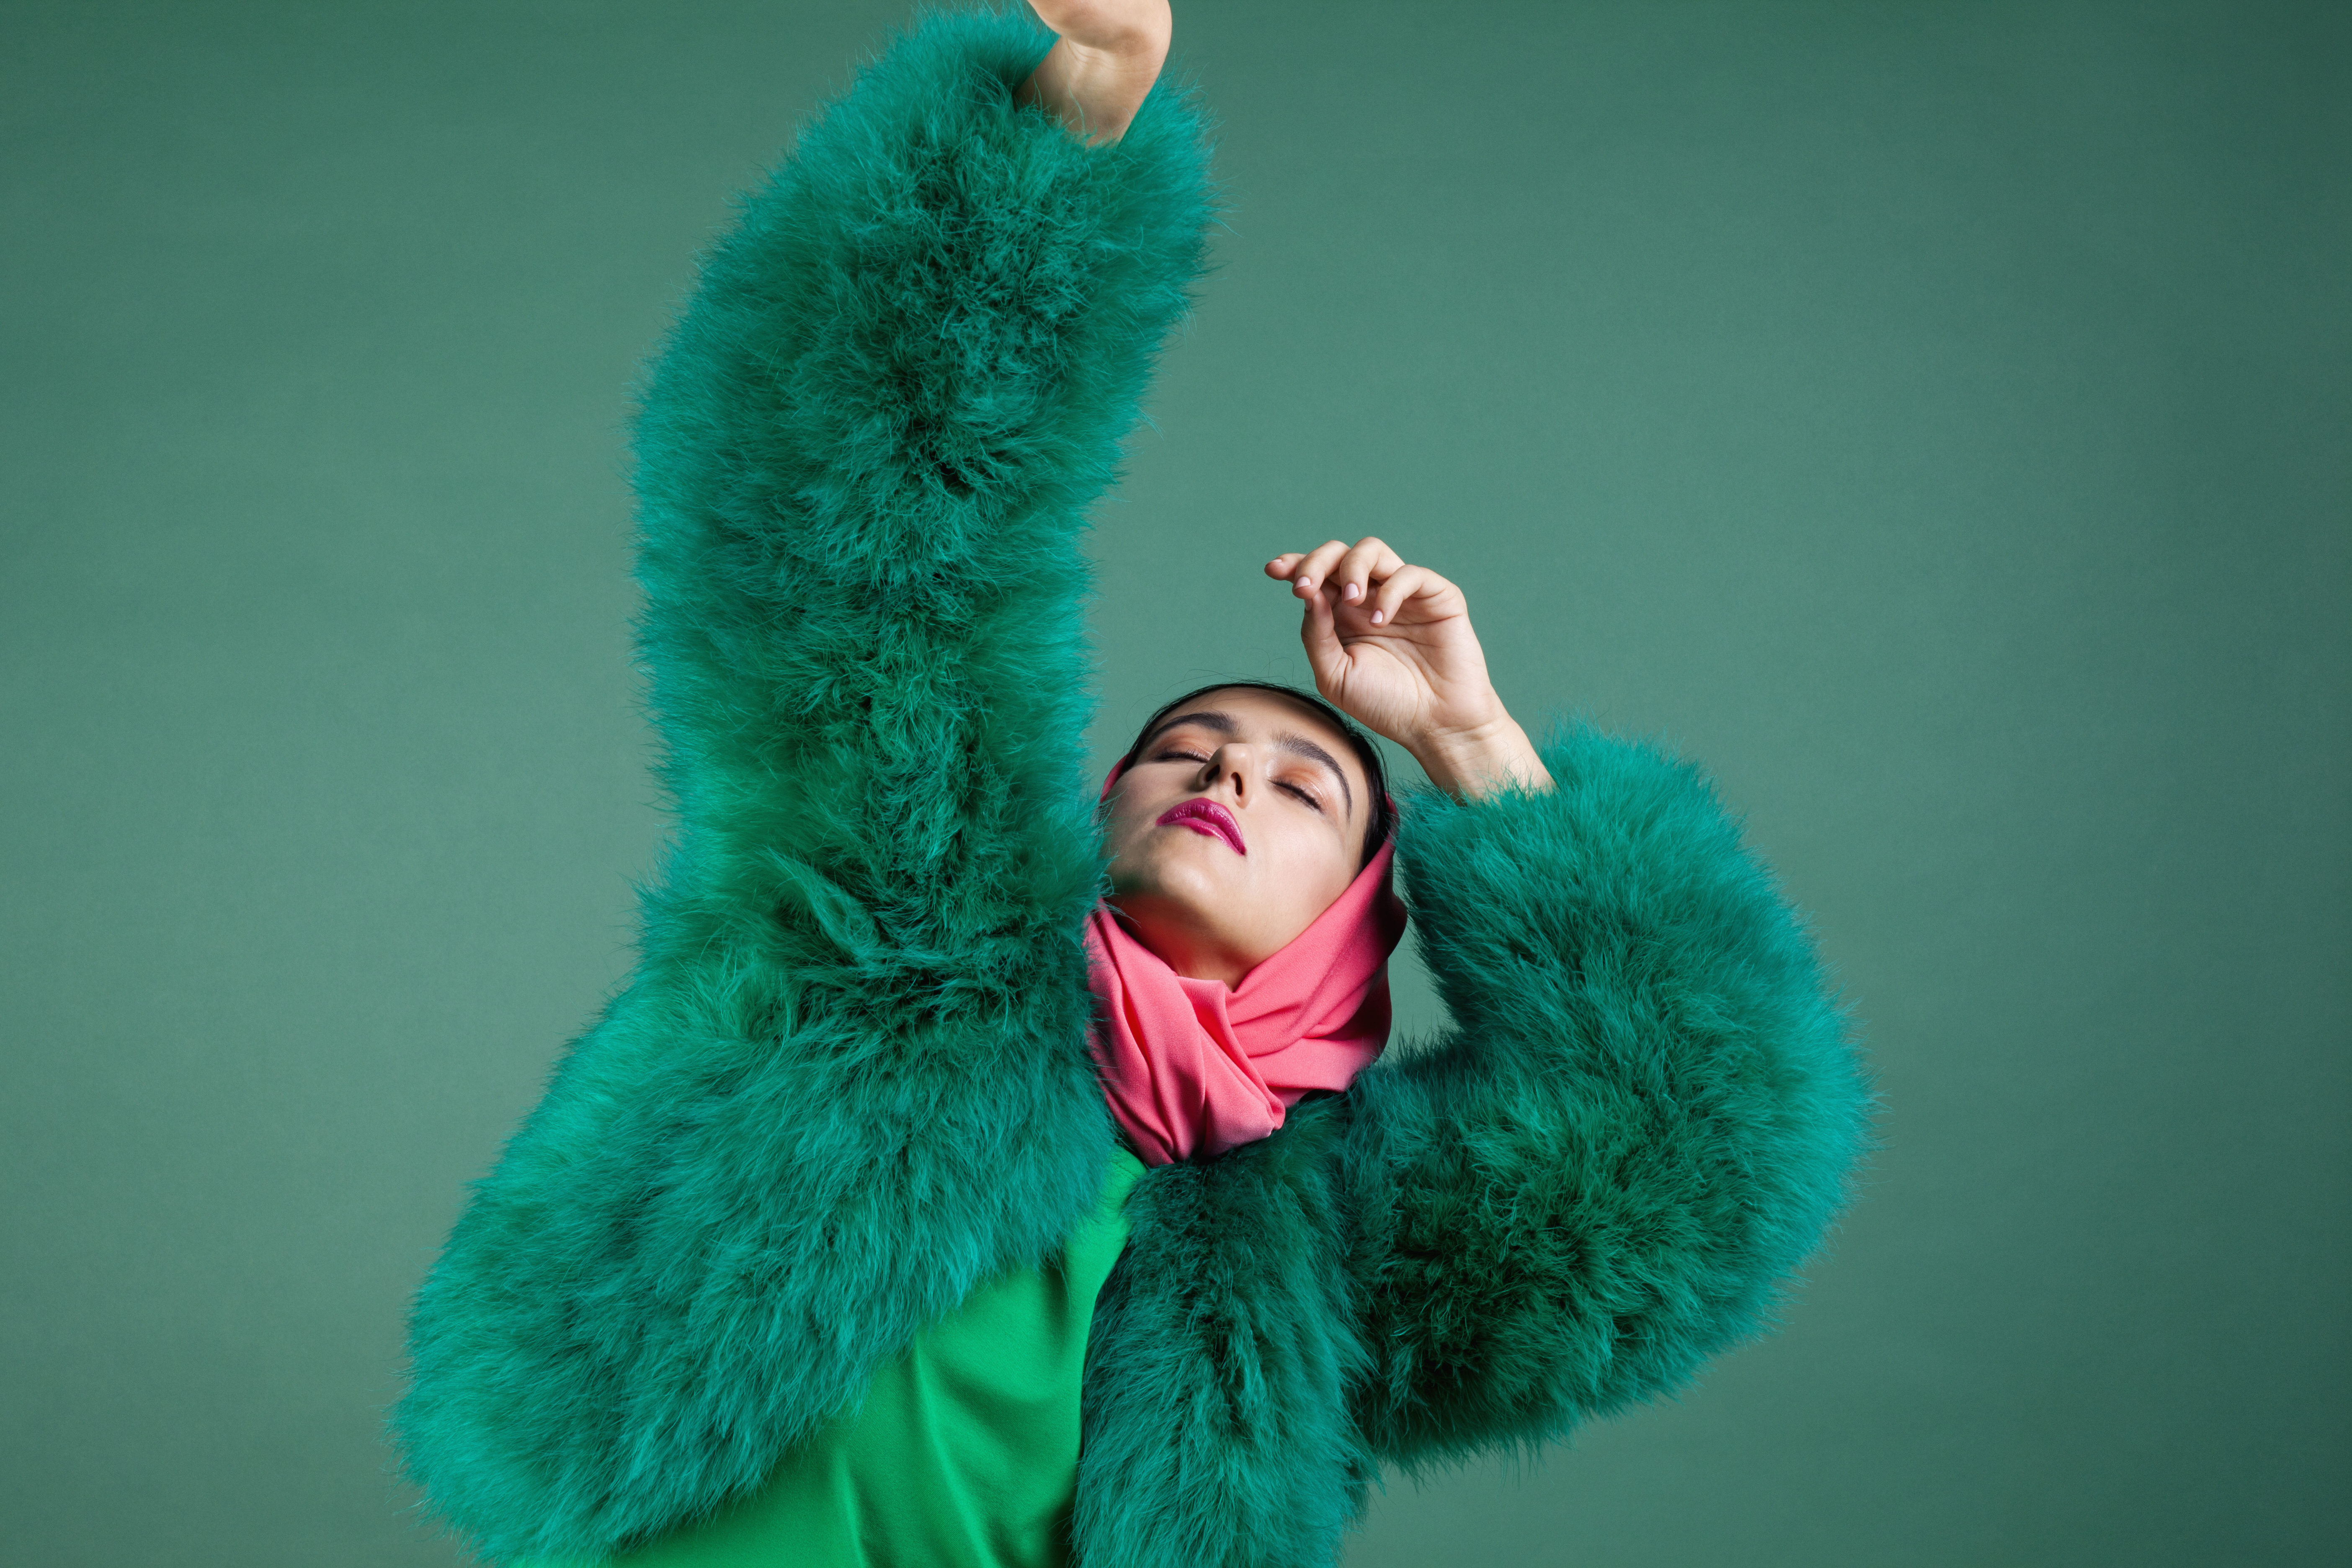 Woman in green fur coat